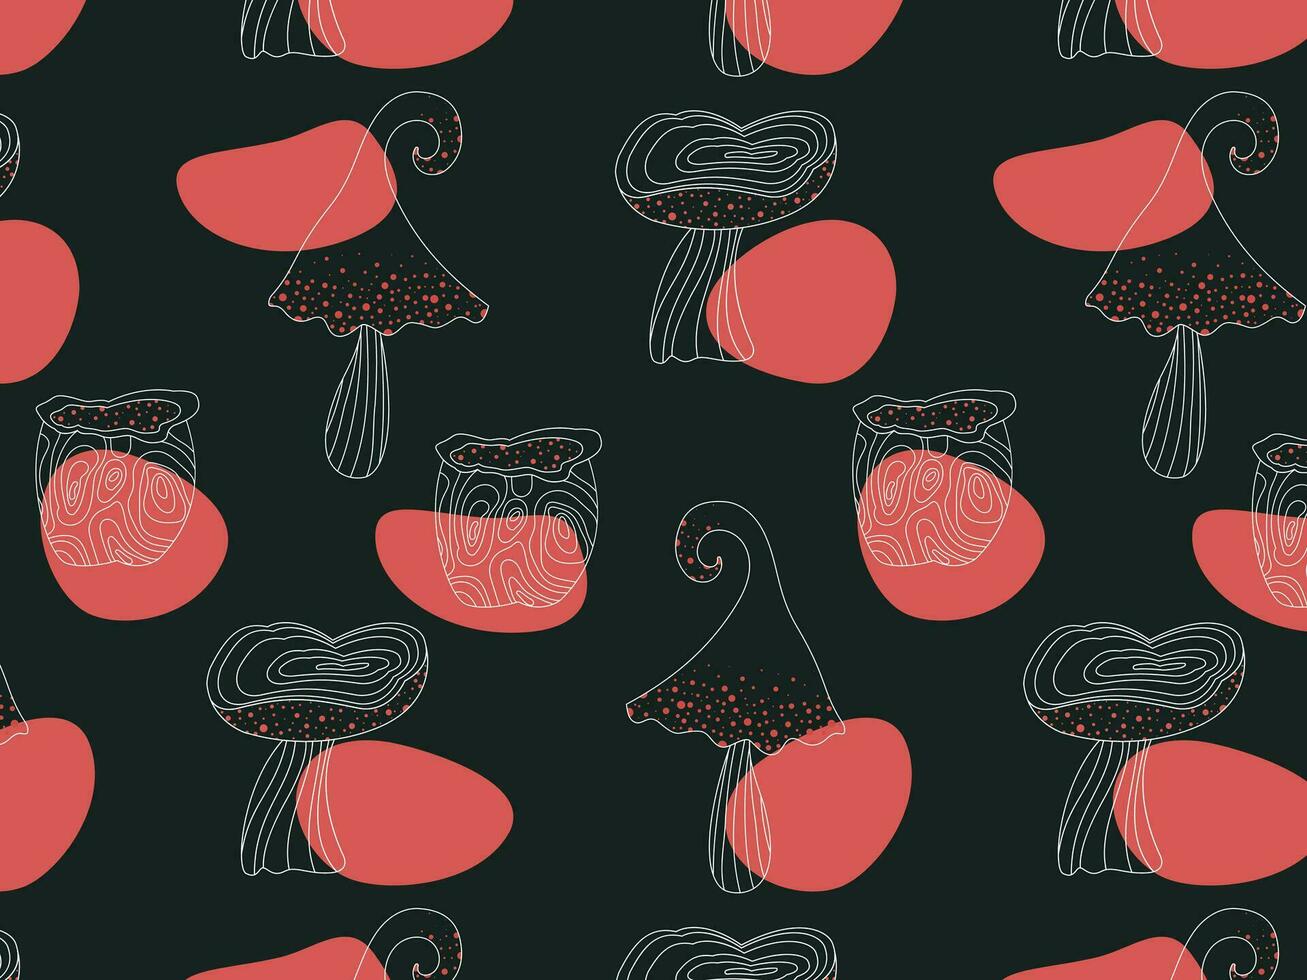 abstrait sans couture modèle de champignons sur une foncé arrière-plan, linéaire dessin, dessiné à la main, vecteur illustration. taches de rouge couleur. conception pour impression, textile, papier.